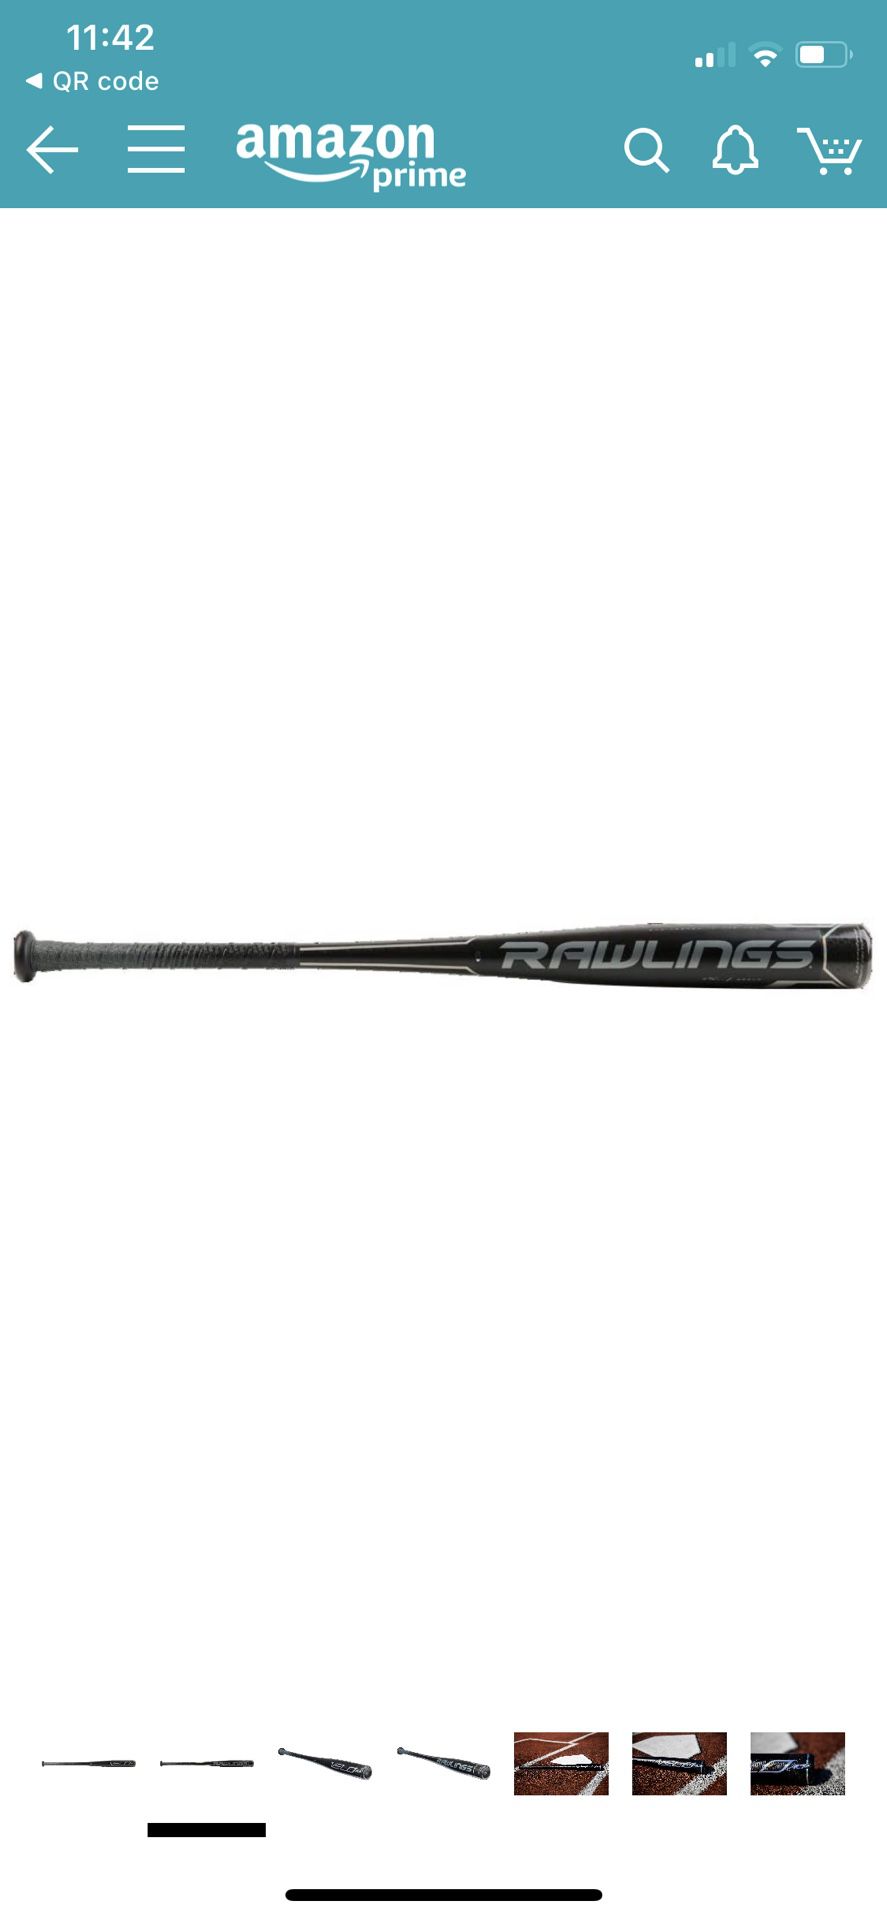 Rawlings baseball bat